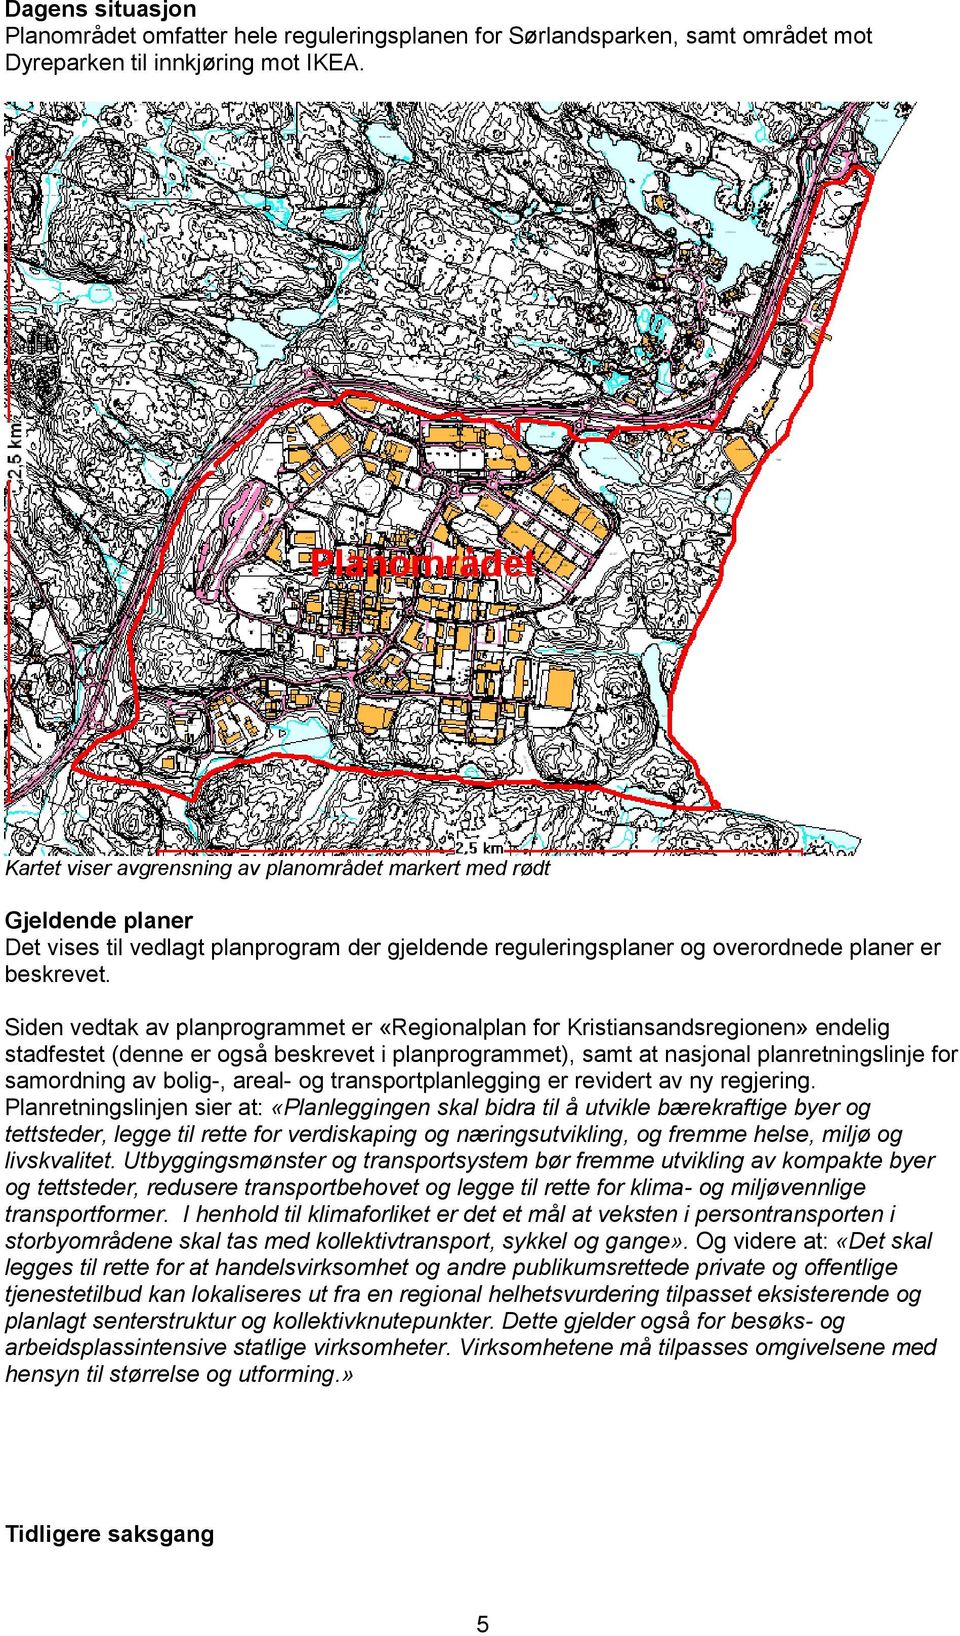 Siden vedtak av planprogrammet er «Regionalplan for Kristiansandsregionen» endelig stadfestet (denne er også beskrevet i planprogrammet), samt at nasjonal planretningslinje for samordning av bolig-,